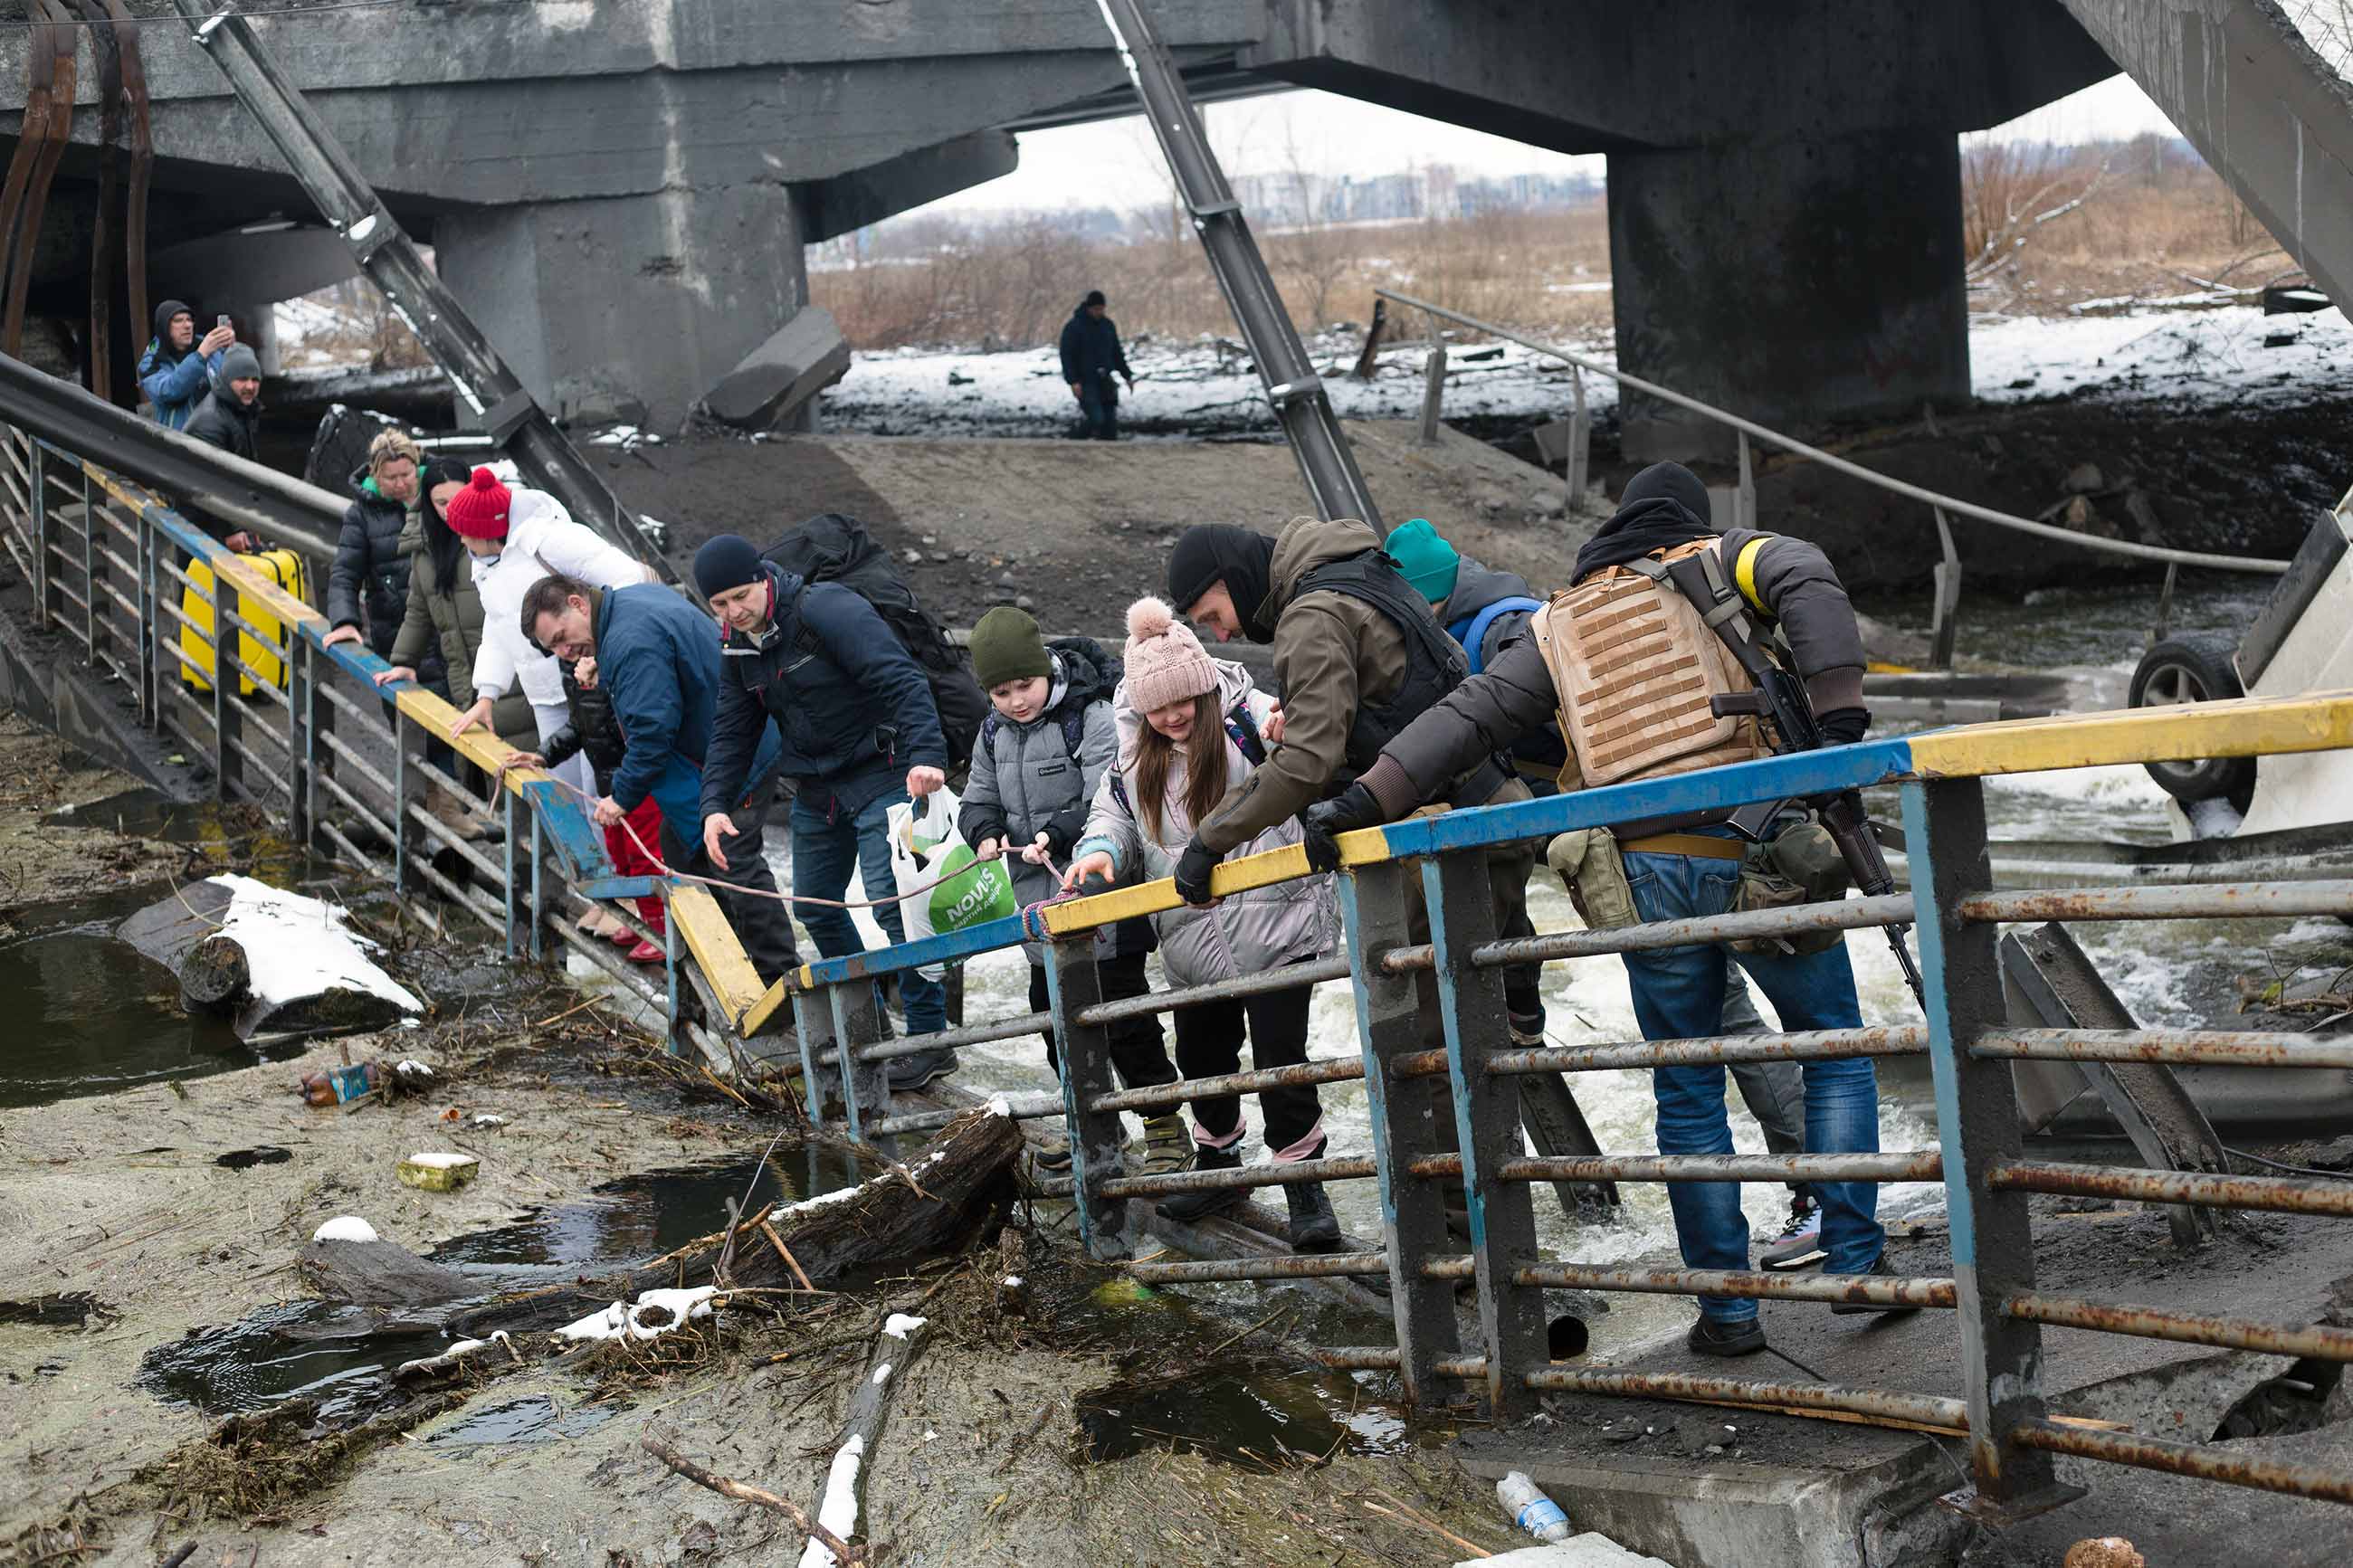 Последние новости украины сегодня вечером. Ирпень разрушенный мост. Обрушенный мост. Люди под мостом Украина. Гуманитарная катастрофа на Украине.